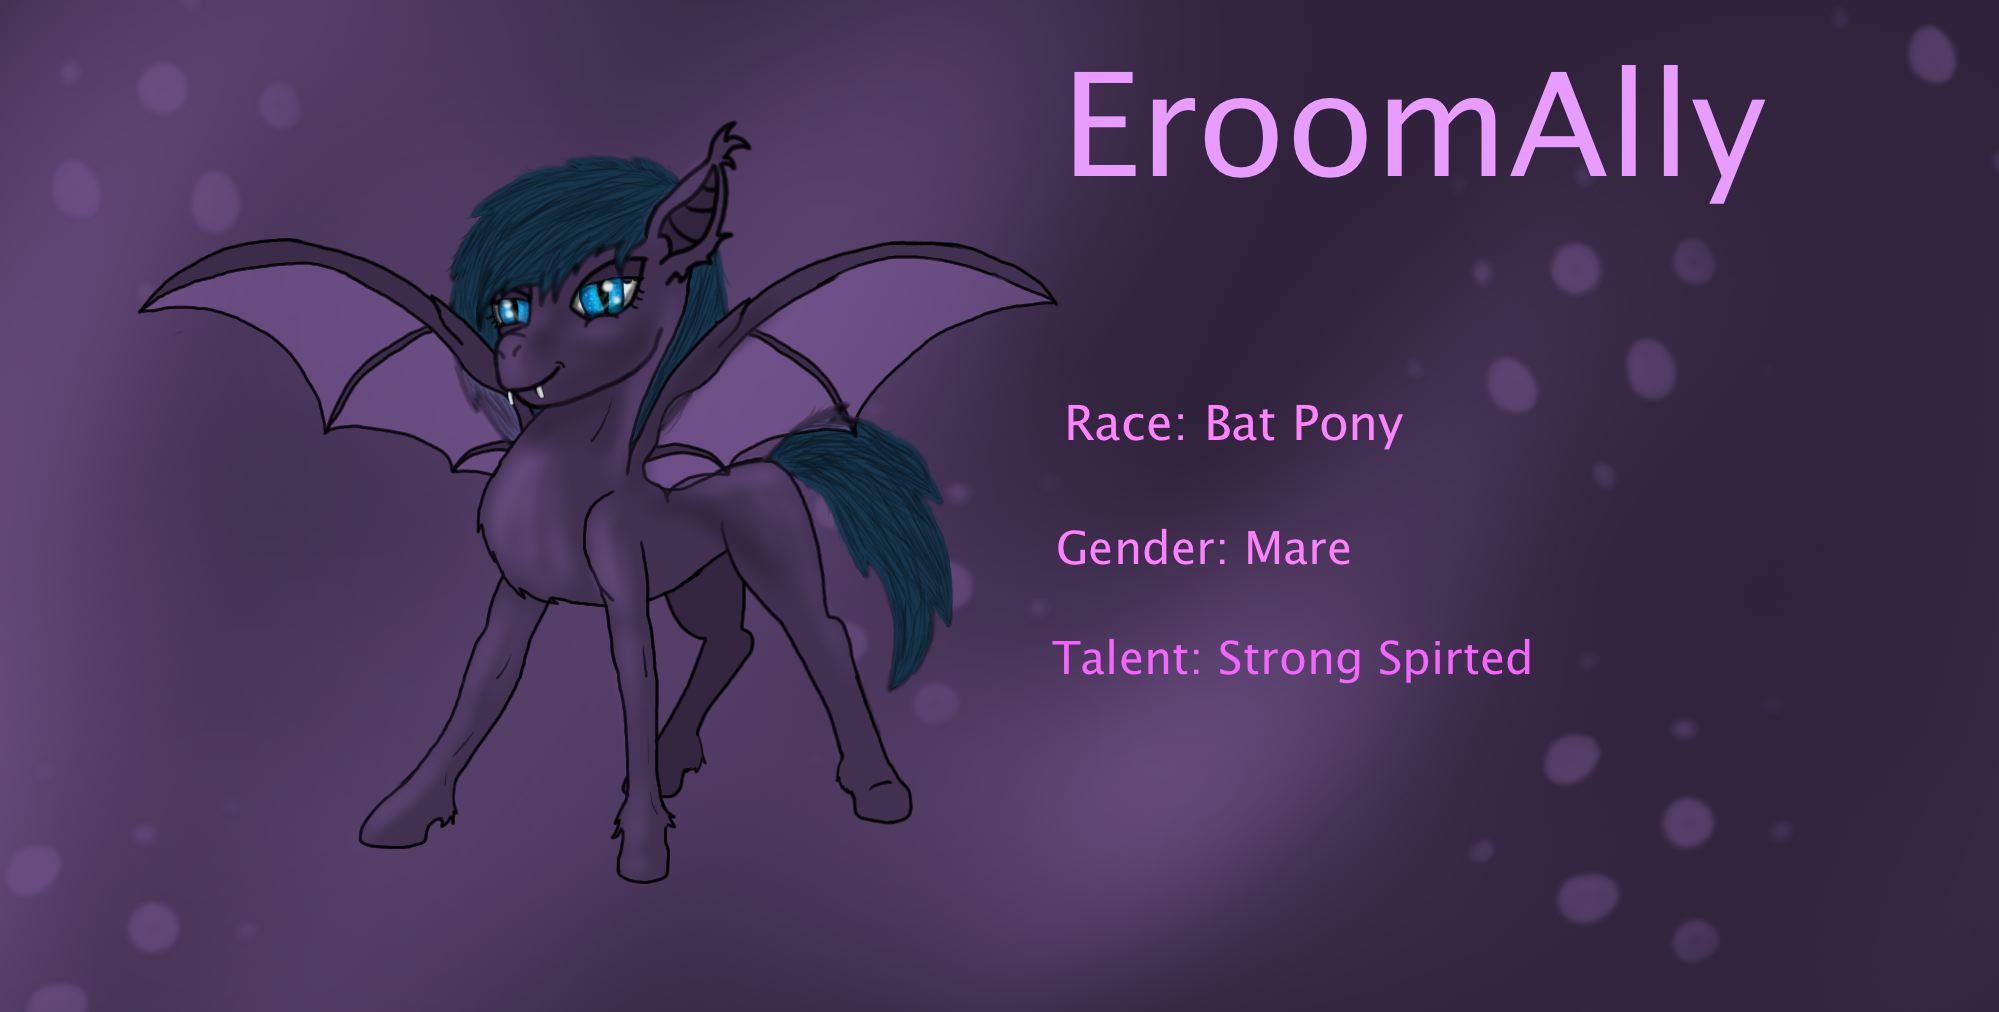 EroomAlly's Bat Pony OC